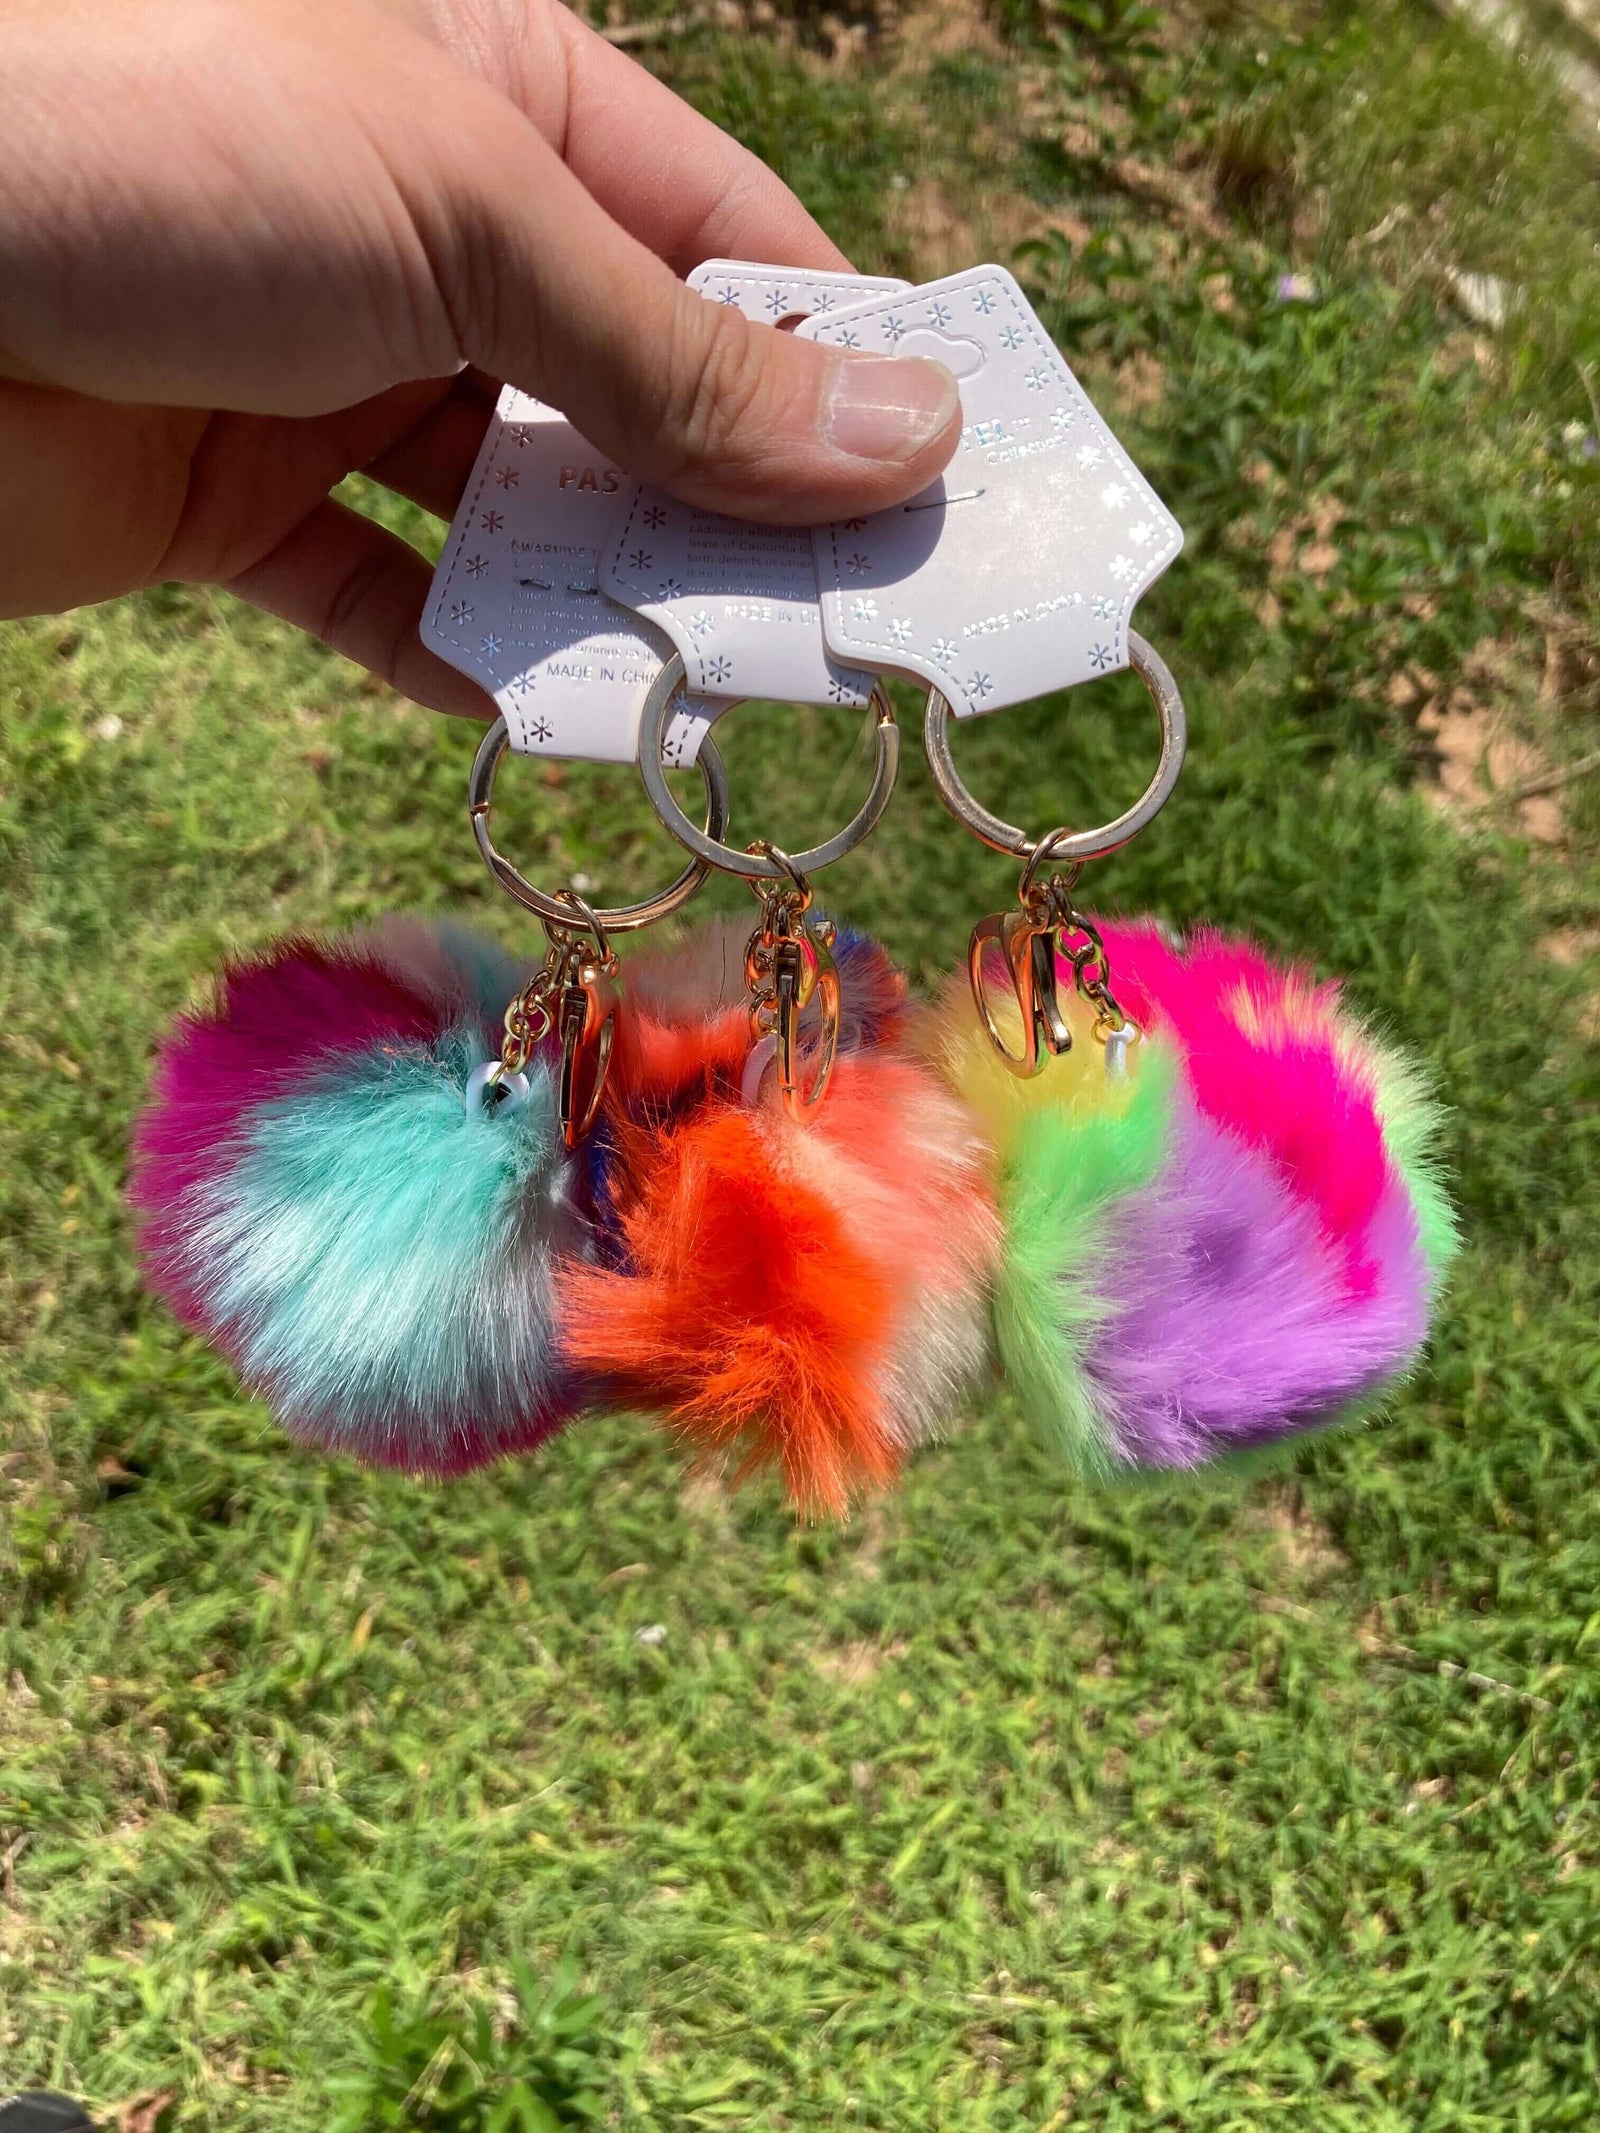 Buy Colored Pom Pom Keychain Bulk Heart Fluffy Fur Puff Ball Key